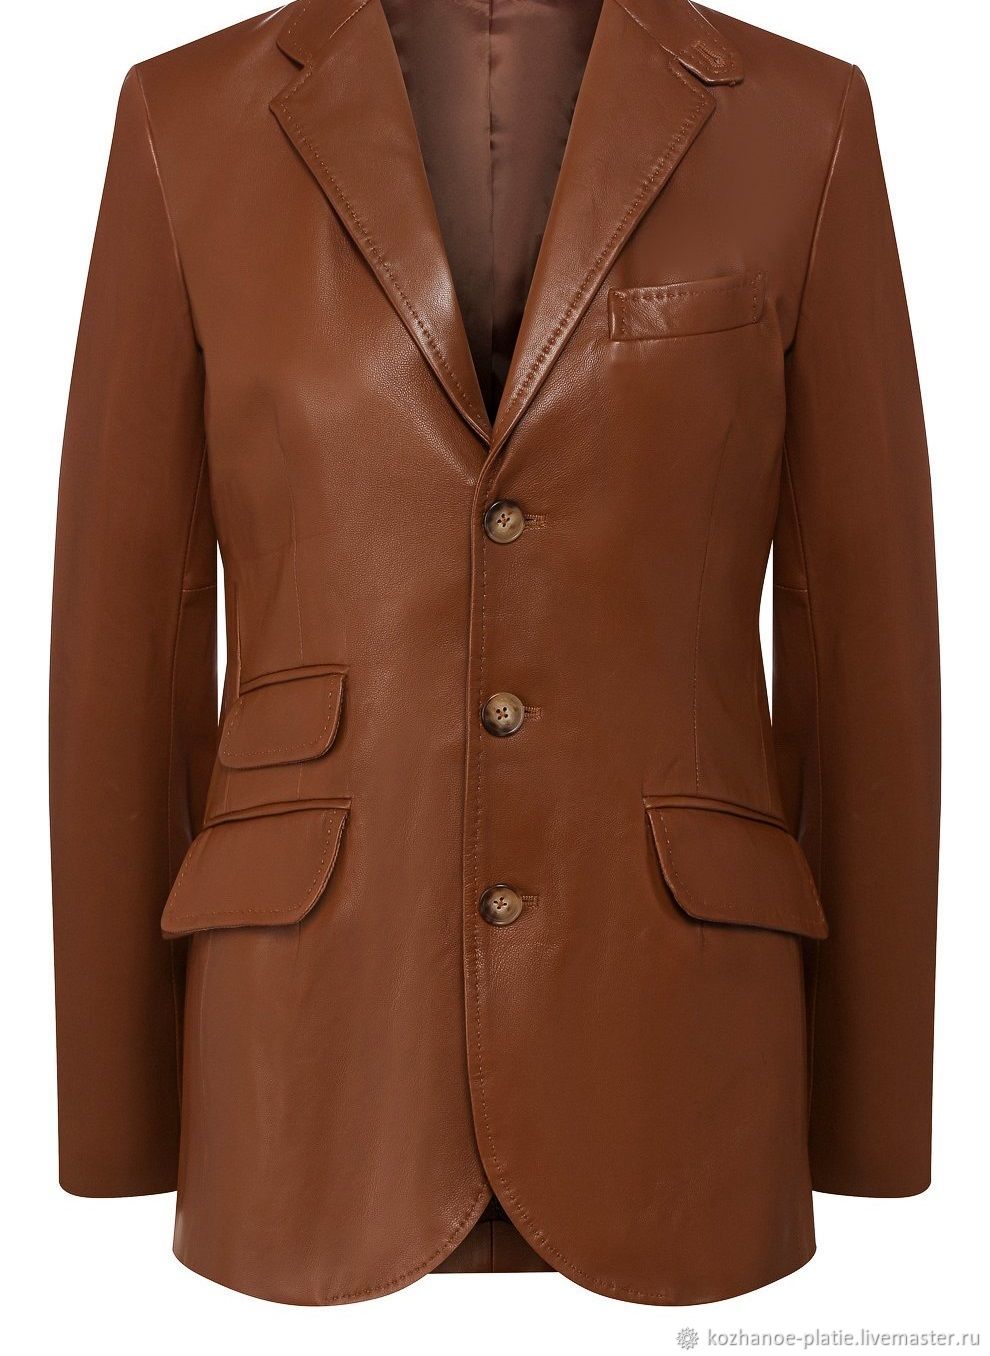 Пиджак шерстяной коричневый женский Ральф лаурен